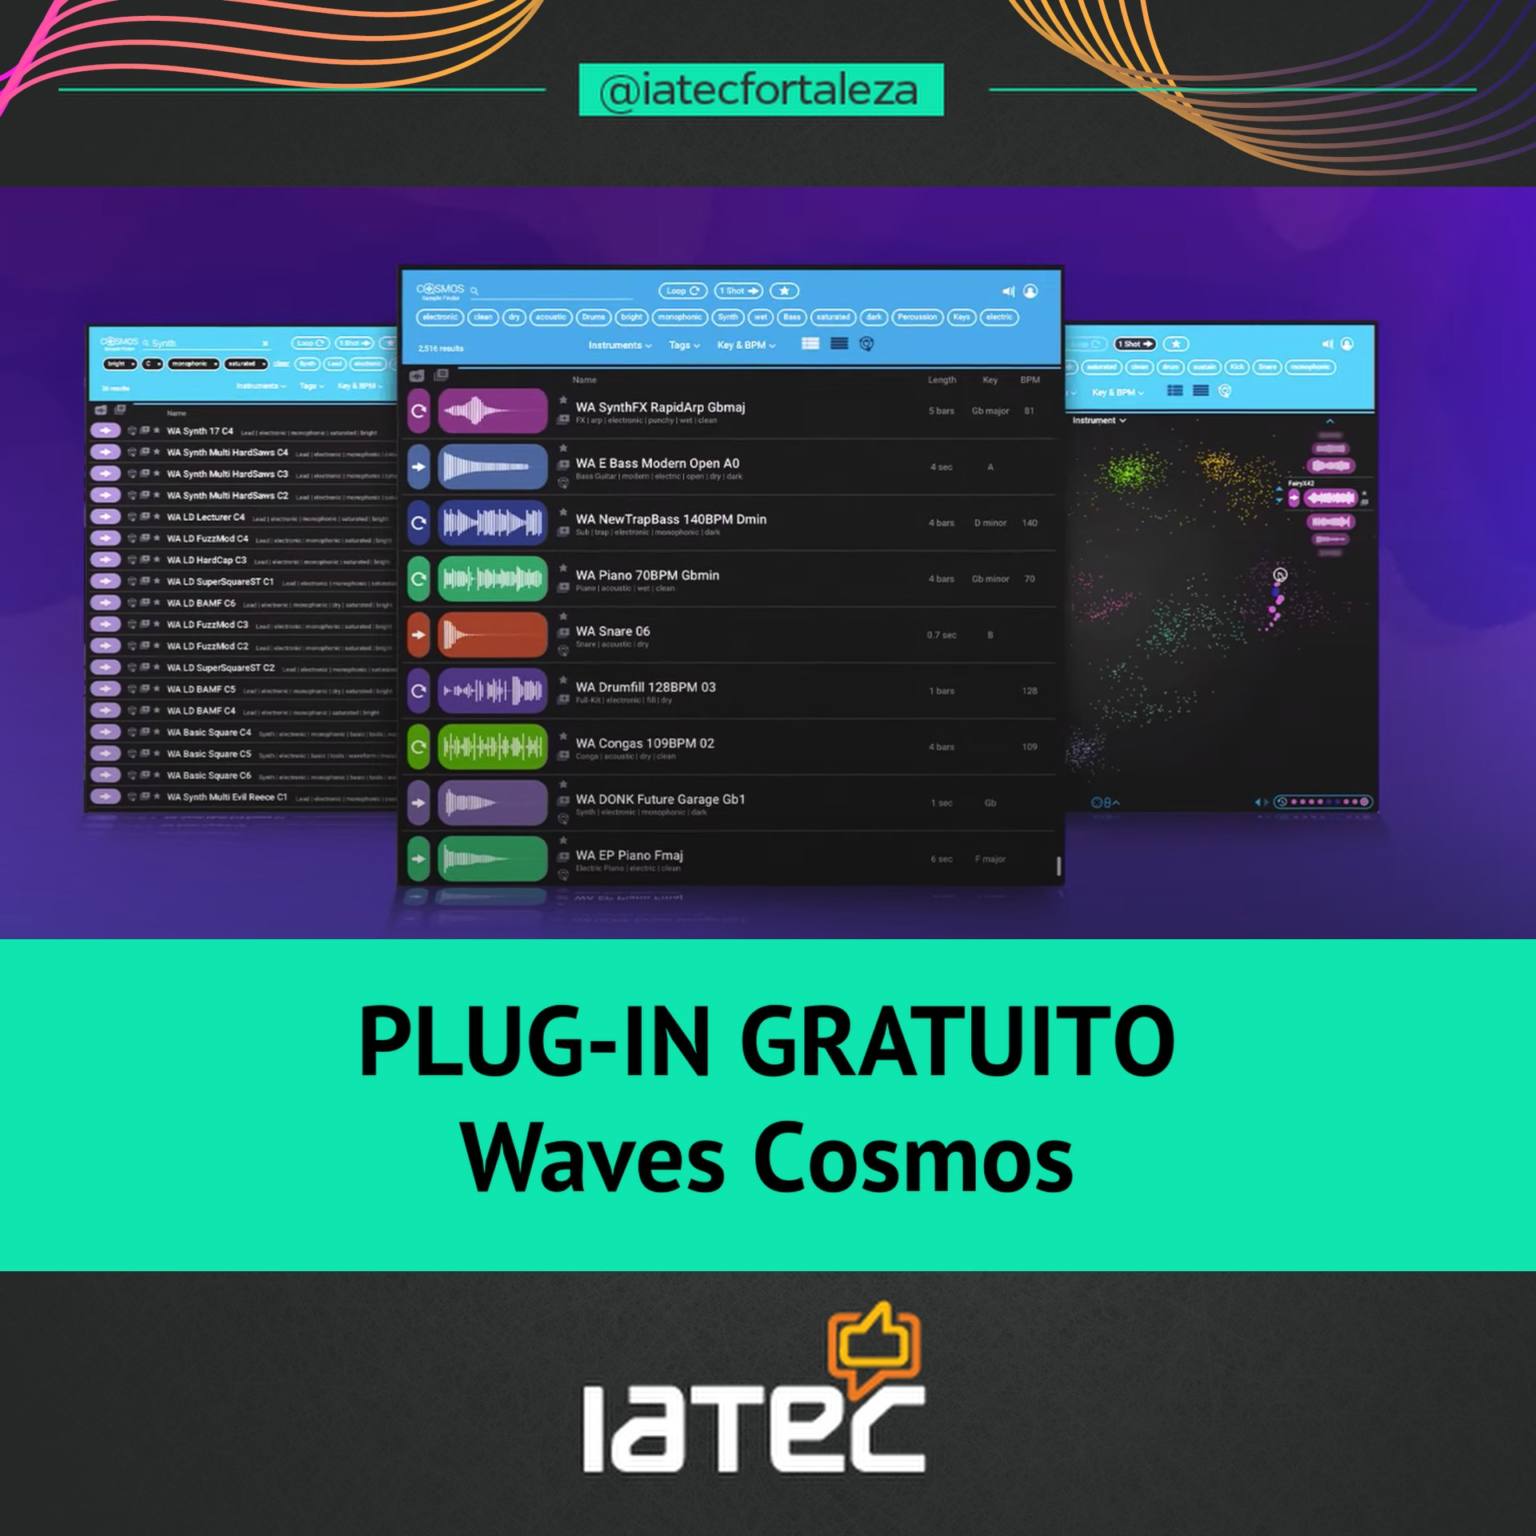 Plug-in gratuito - Waves Cosmos